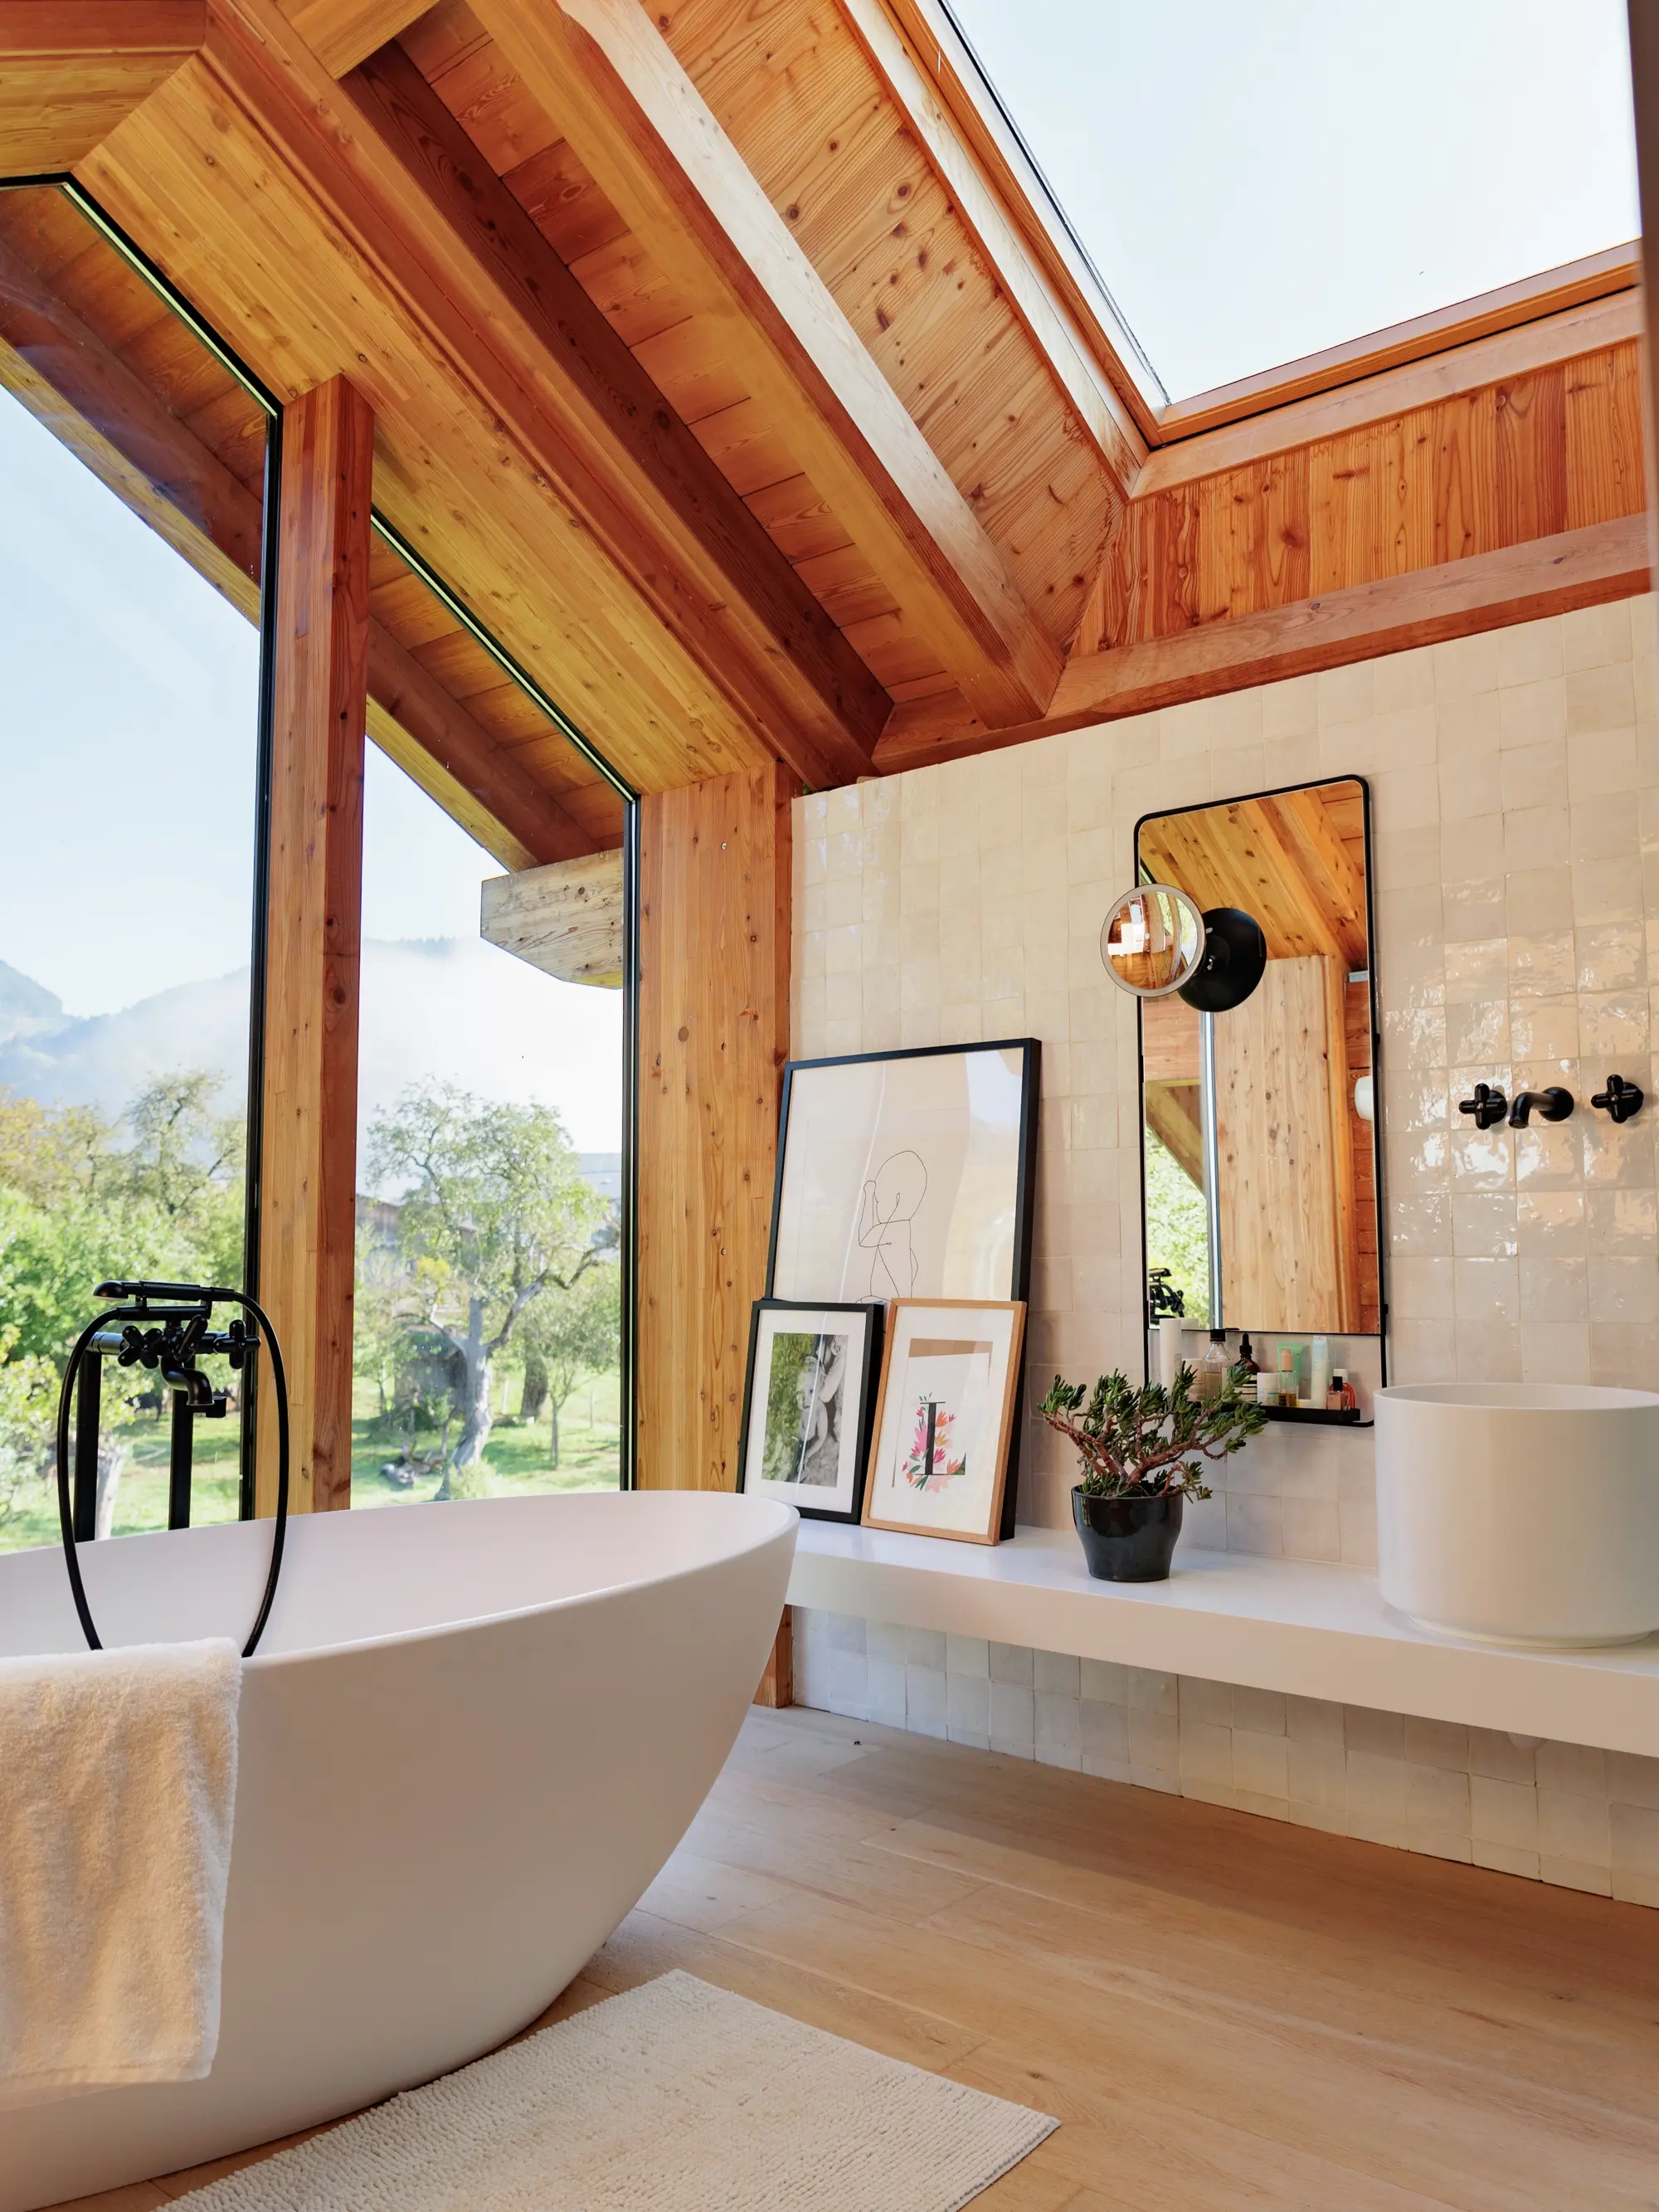 Salle de bain moderne avec une baignoire indépendante, des murs carrelés en beige, un sol en bois et un plafond en bois avec de grandes fenêtres donnant sur un paysage naturel.